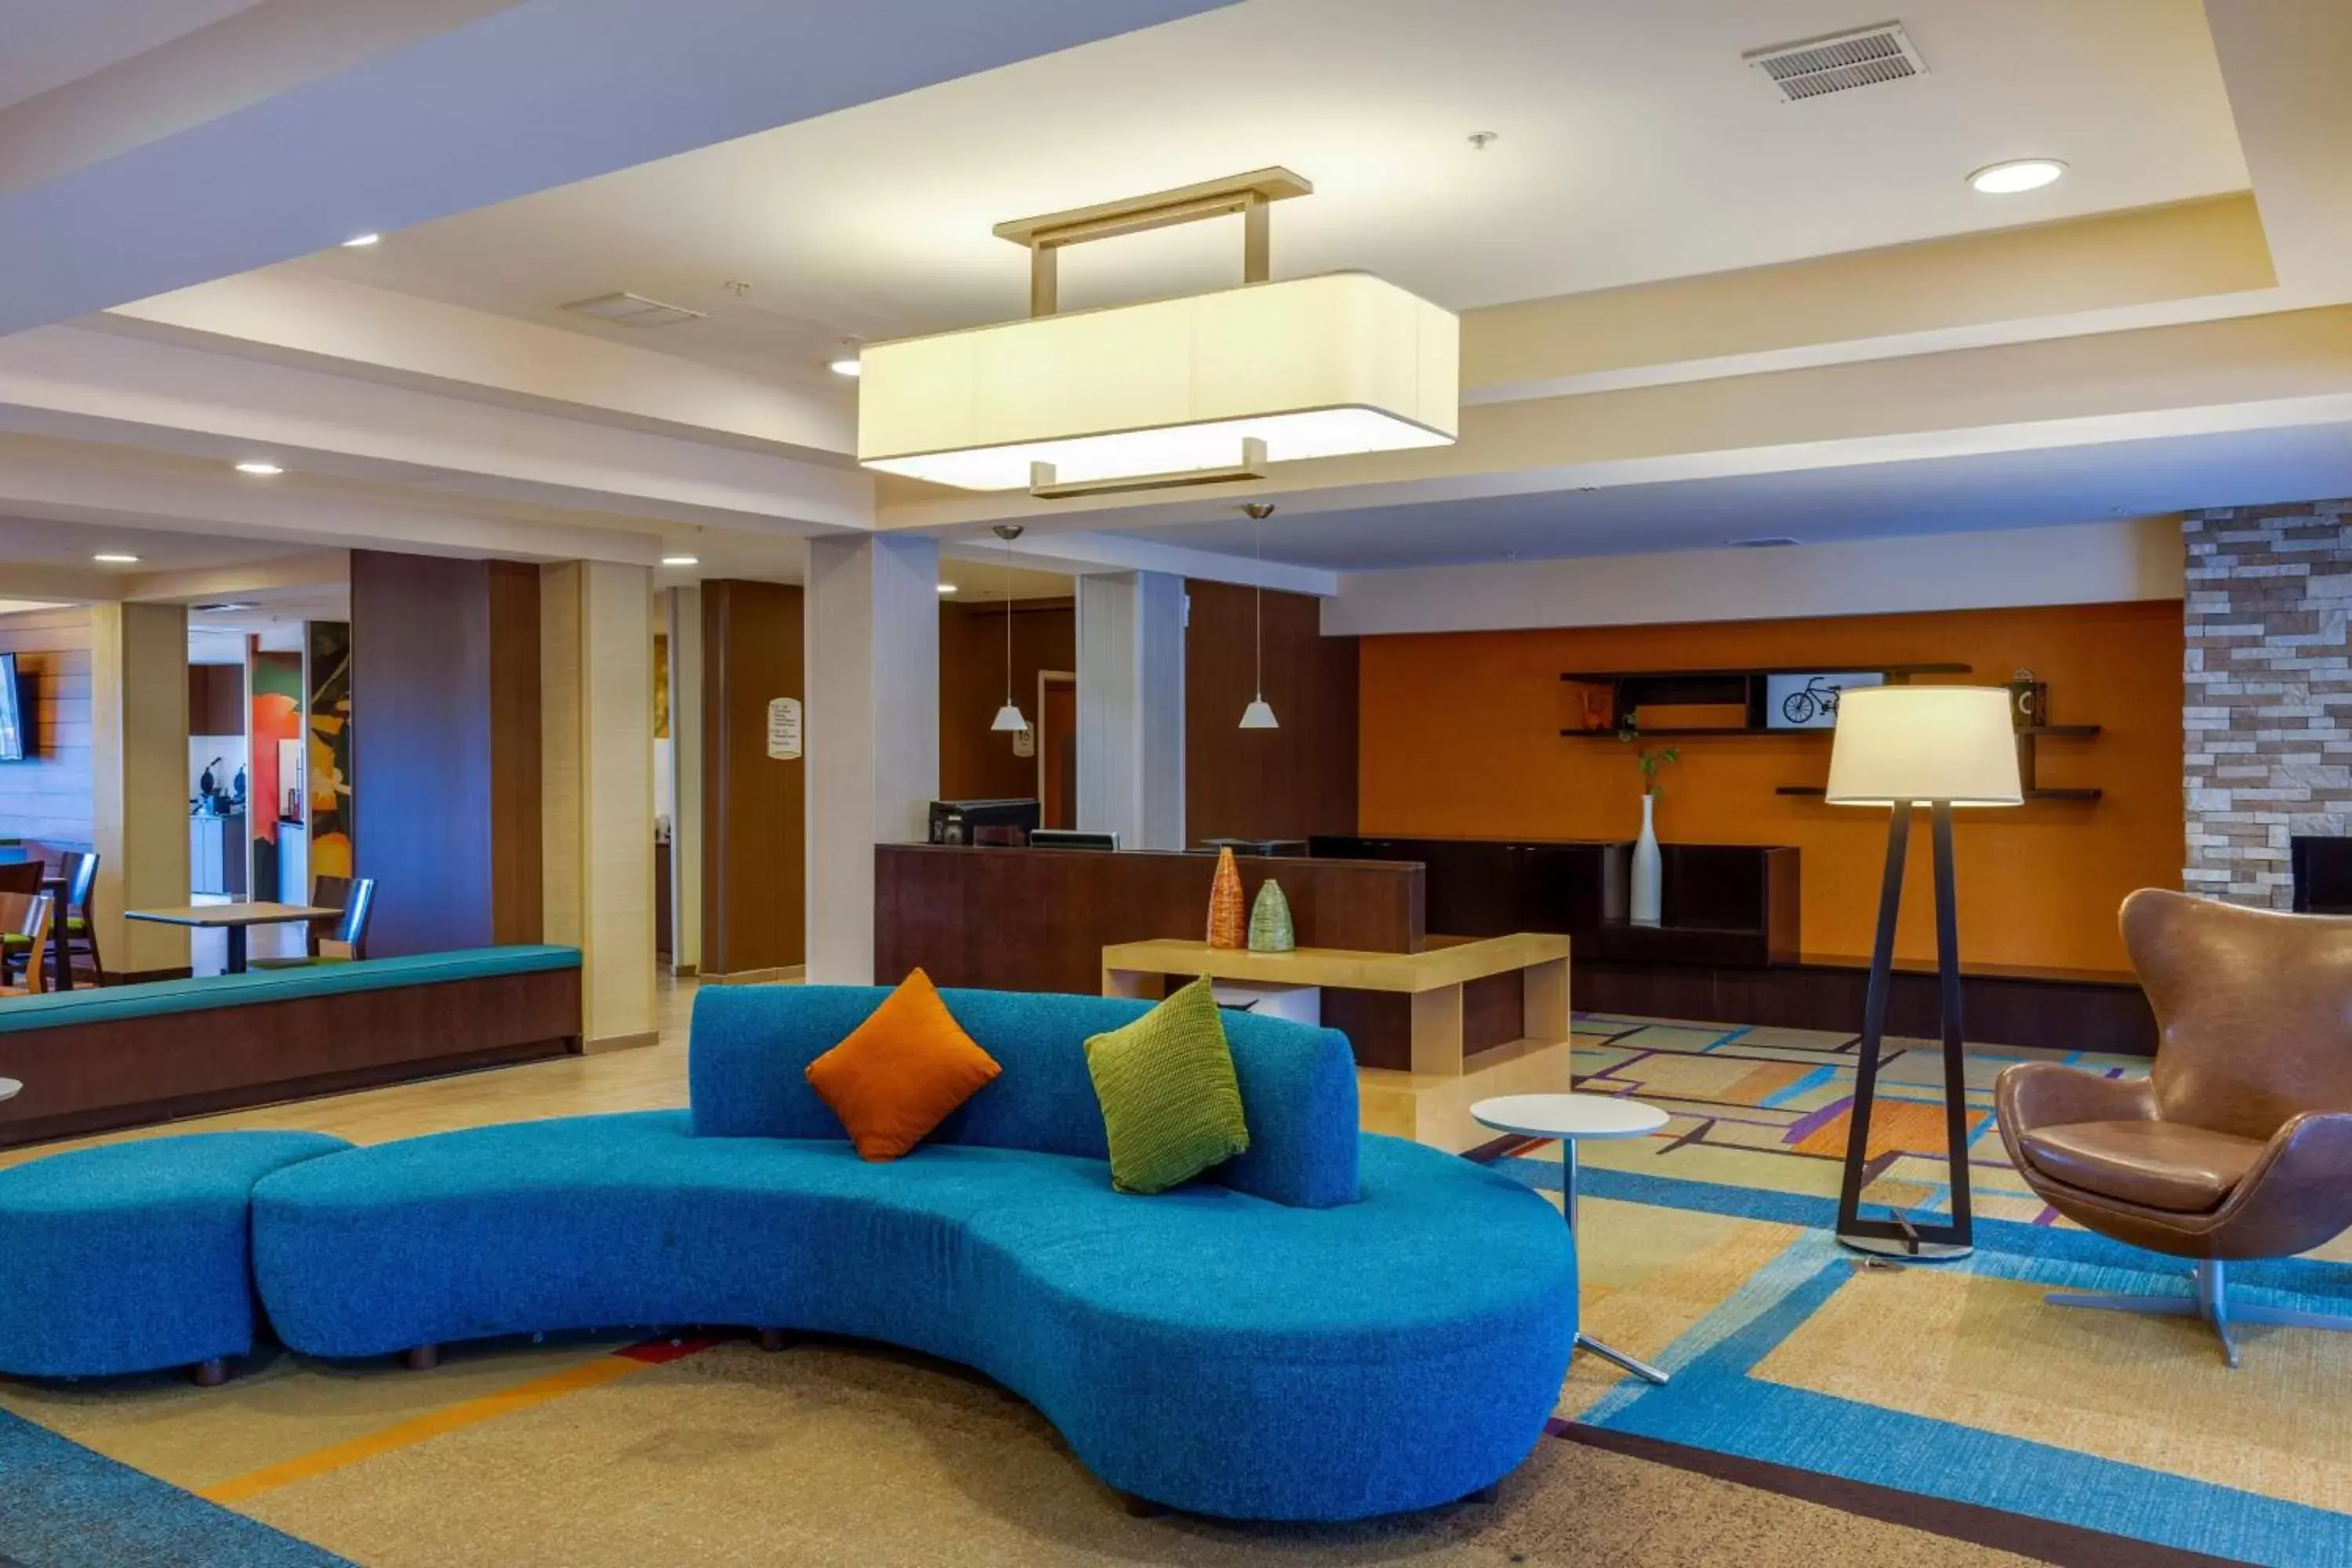 Lobby or reception, Lobby/Reception in Fairfield Inn & Suites by Marriott Edmond